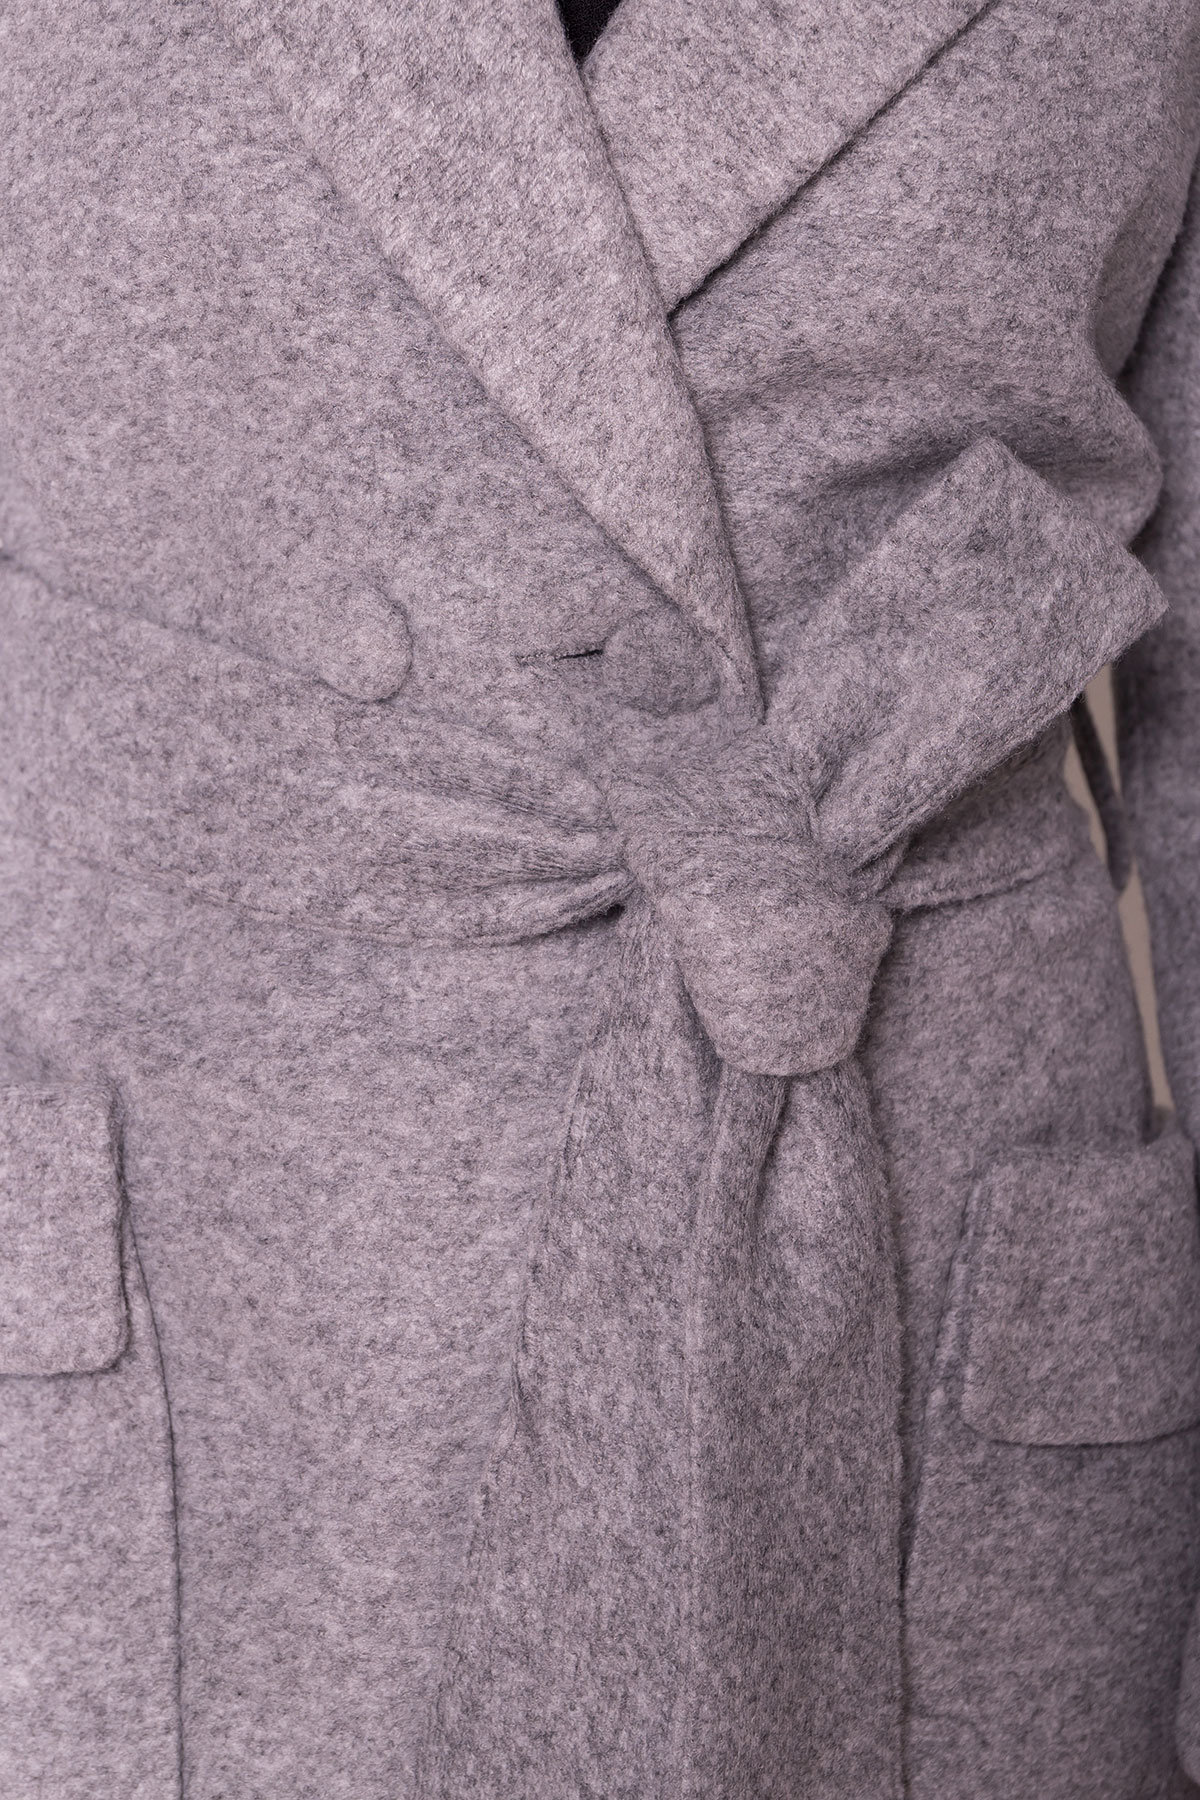 Пальто Парма 4714 АРТ. 34079 Цвет: Серый - фото 4, интернет магазин tm-modus.ru